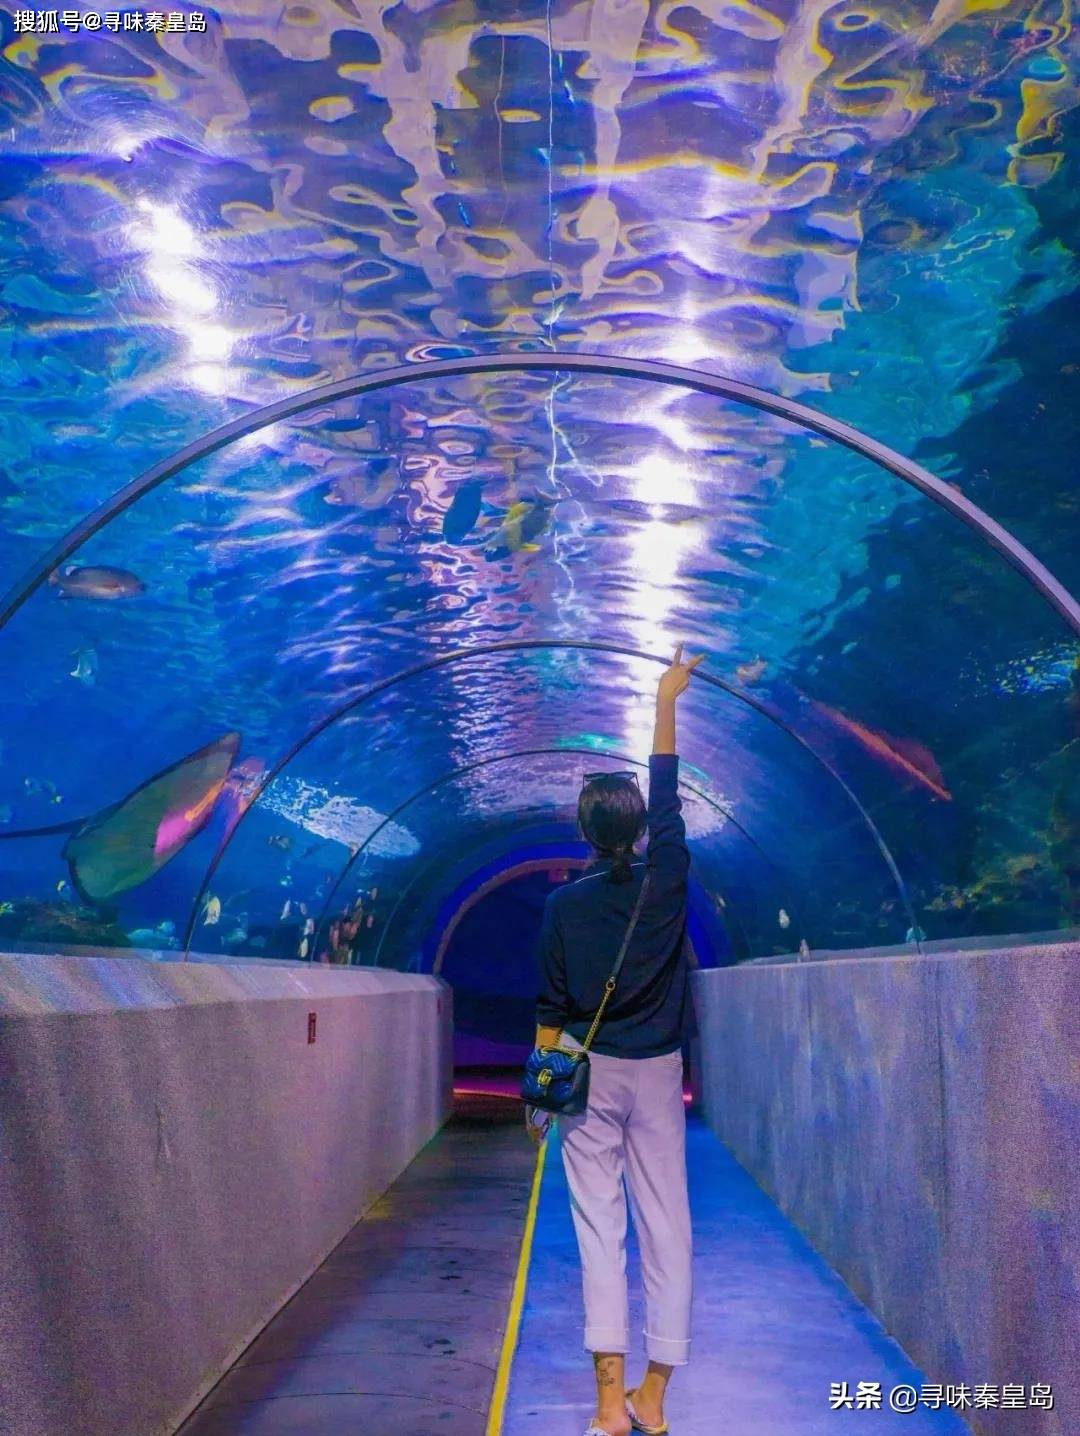 在秦皇岛上的海底世界,竟然能与海洋生灵穿越虚拟与现实